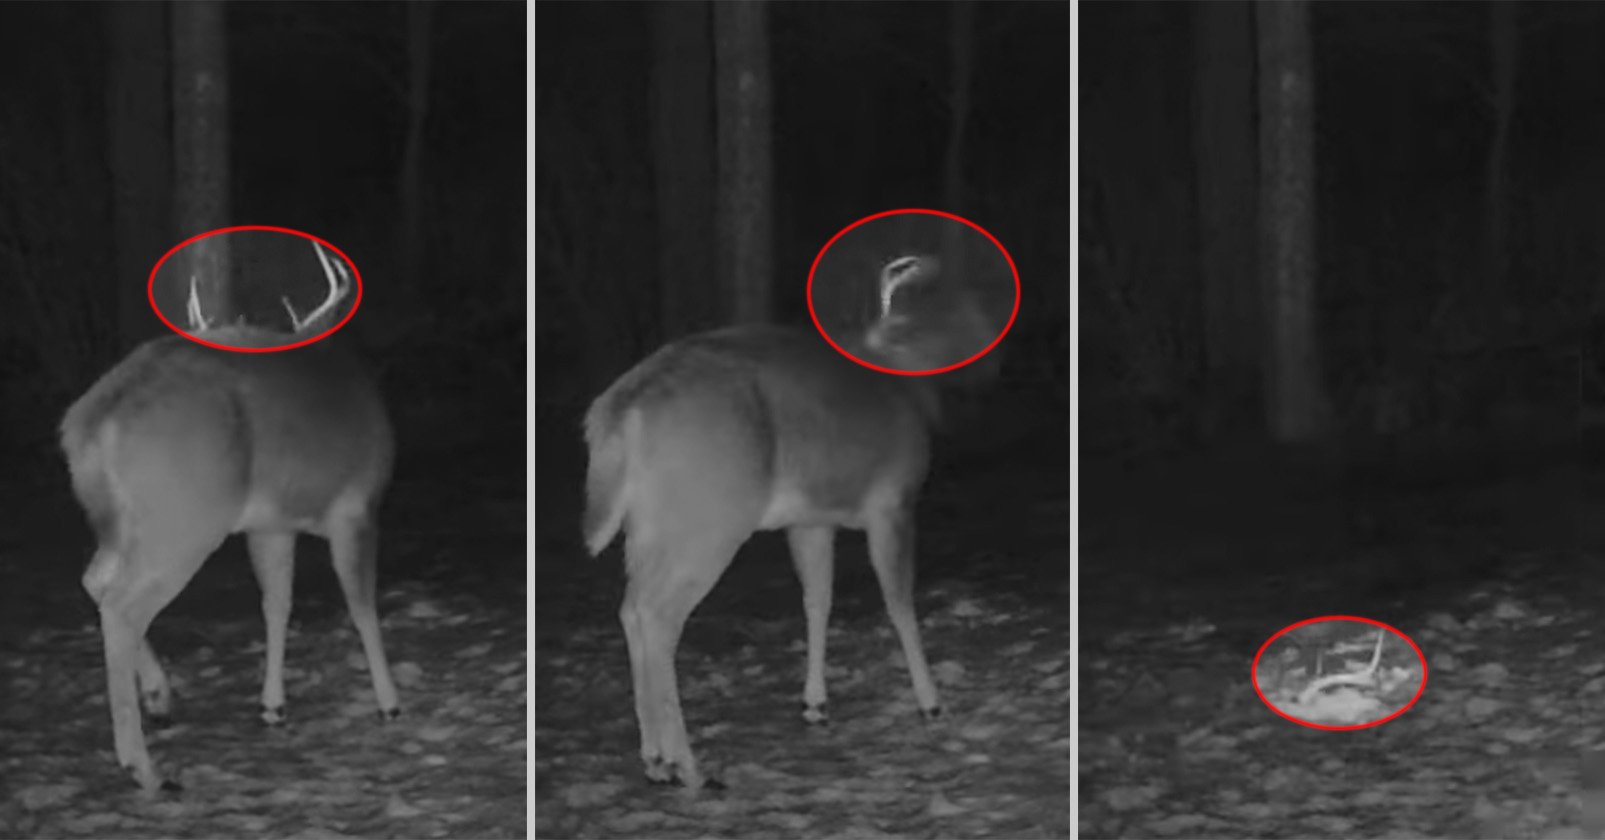 Una cámara de sendero captura imágenes raras de ciervos sacudiéndose de su cornamenta